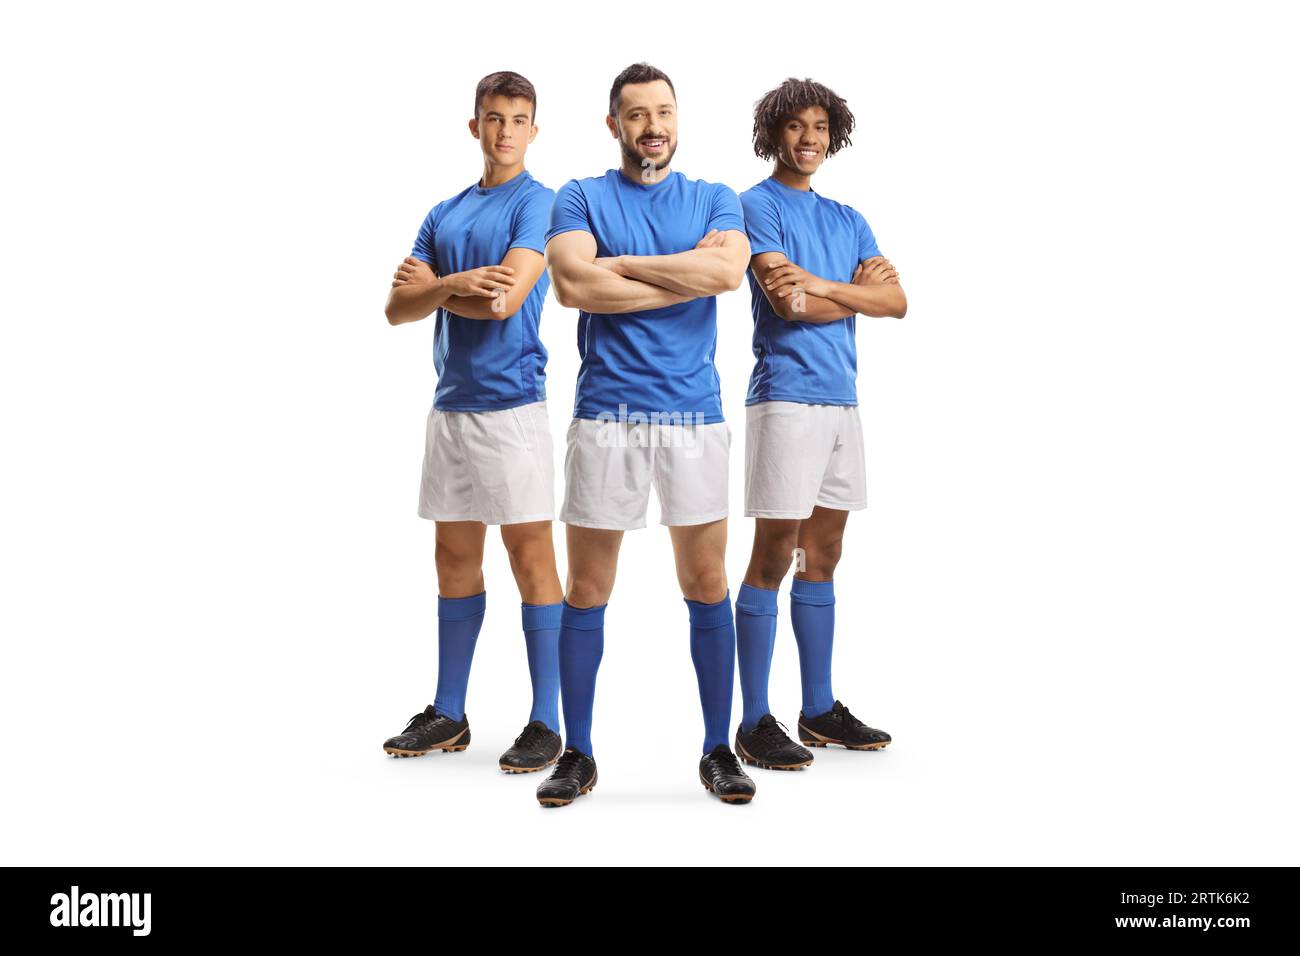 Tres jugadores de fútbol en jerseys azules posando aislados sobre fondo blanco Foto de stock